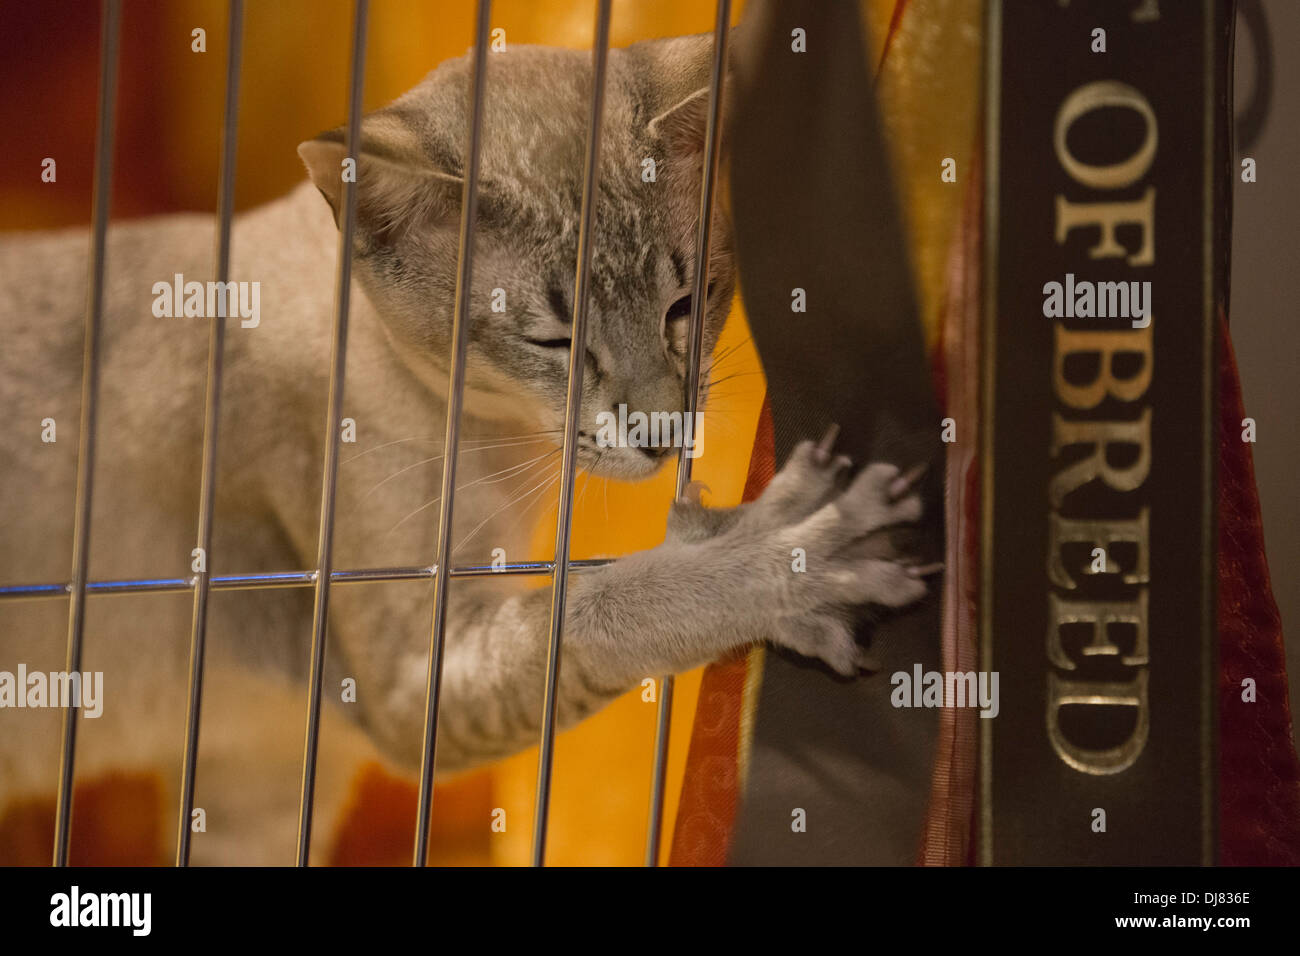 Tonkanesen Katze in einem Käfig. Obersten Katzenausstellung im National  Exhibition Centre in Birmingham, England, Vereinigtes Königreich  Stockfotografie - Alamy